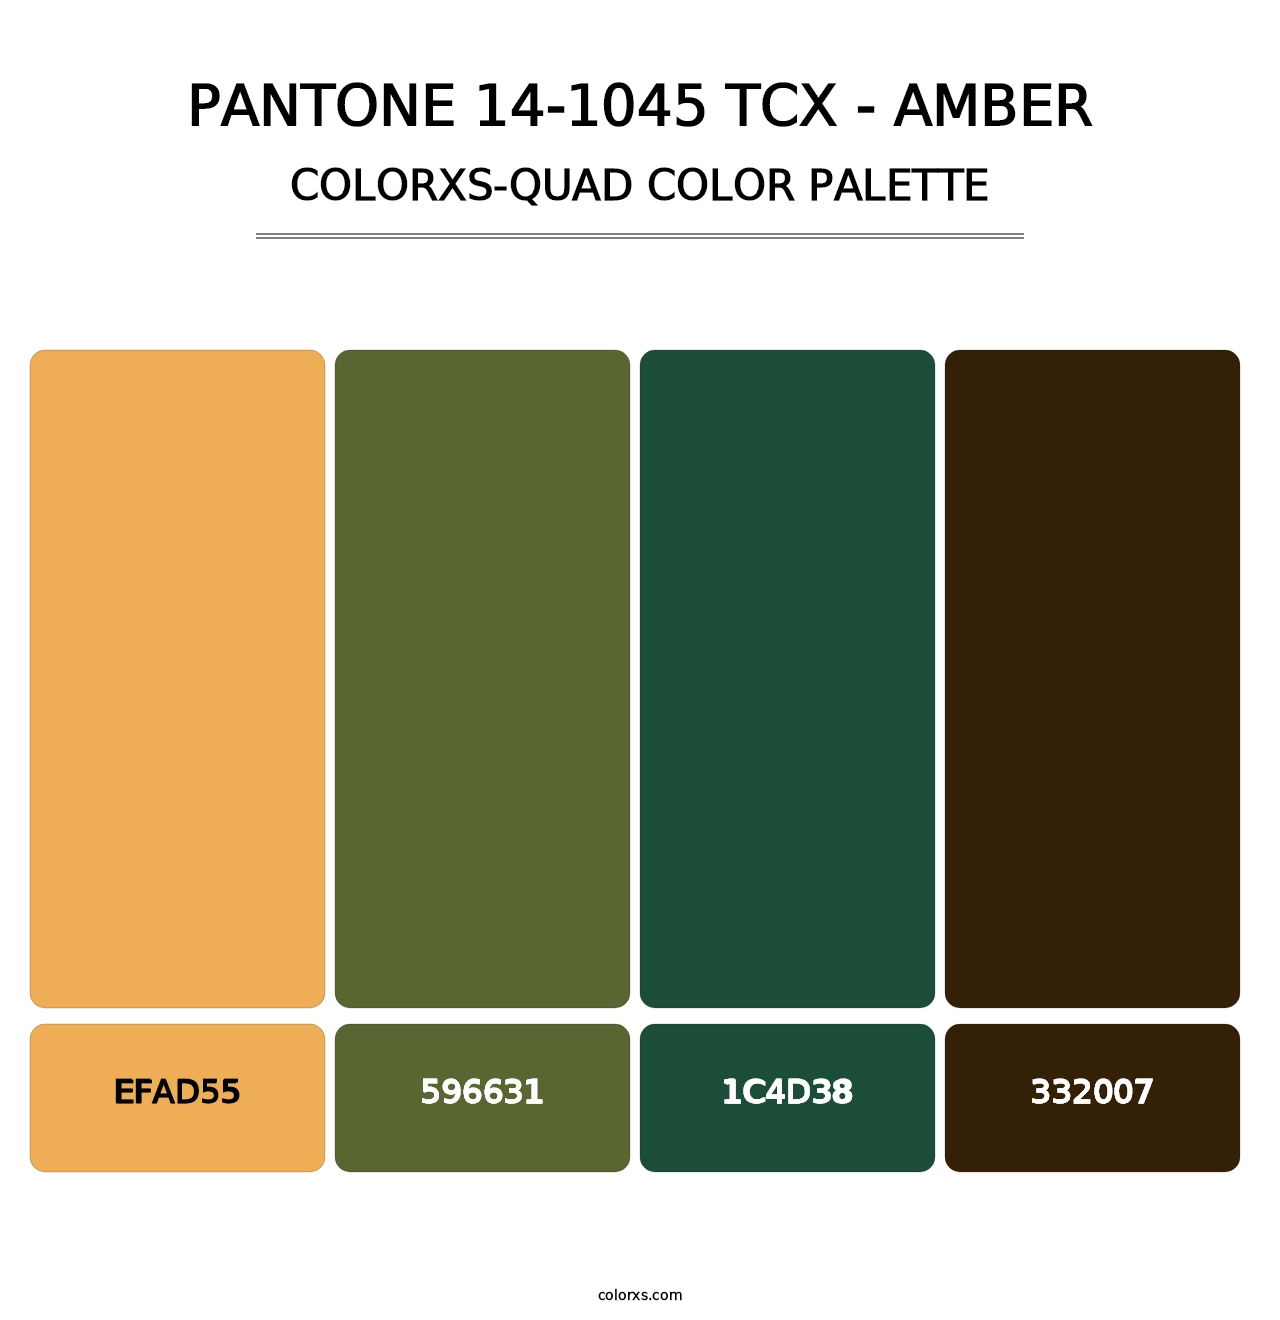 PANTONE 14-1045 TCX - Amber - Colorxs Quad Palette